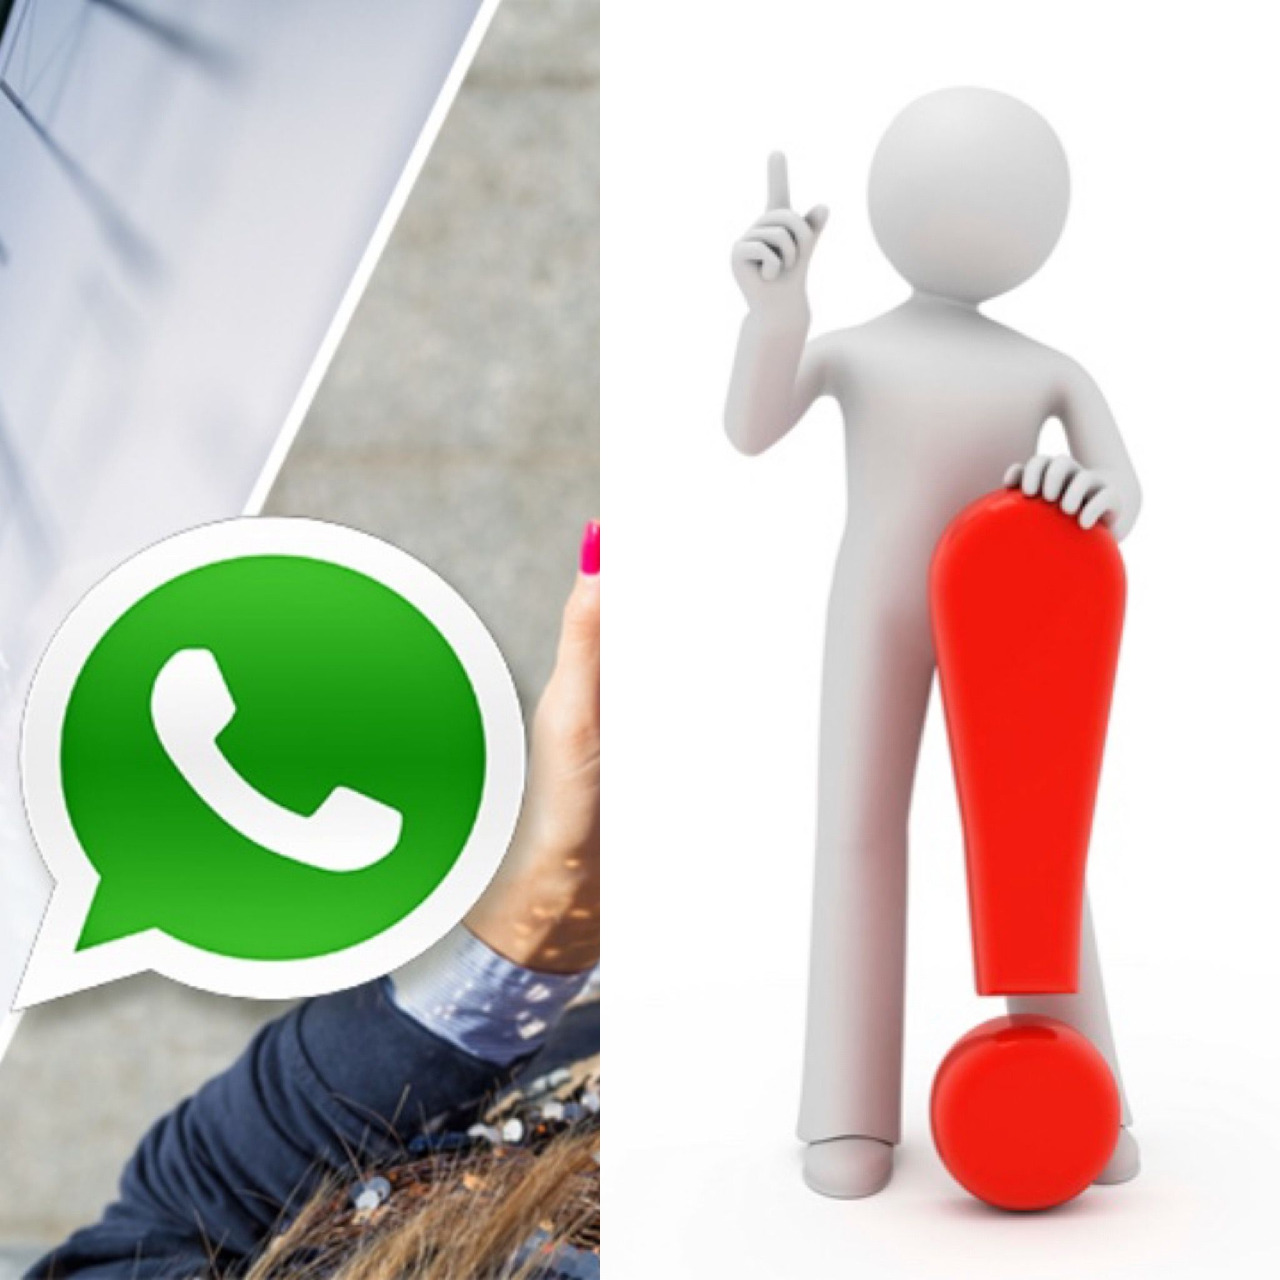 Pozor důležité upozornění při odběru neveřejných nabídek z našich WhatsApp kanálů!!